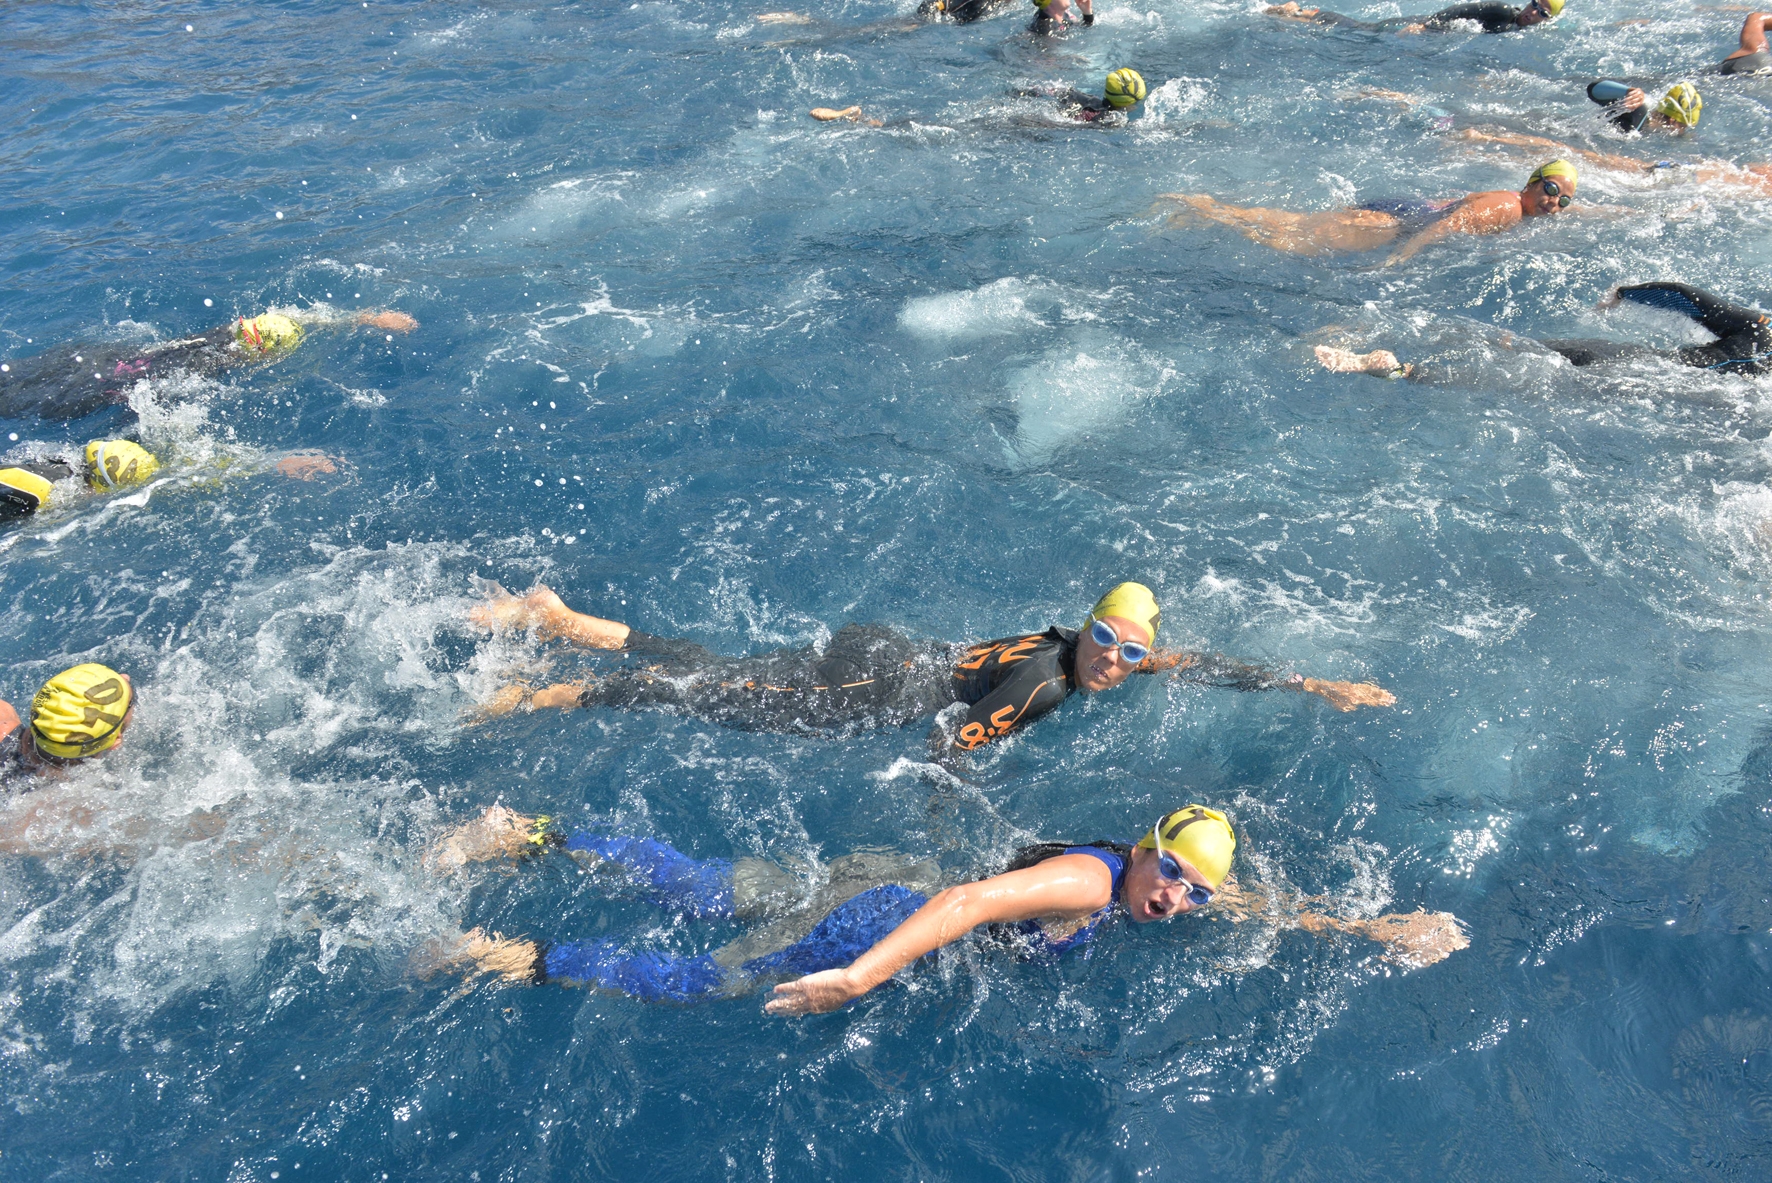 Se presenta la “Valverde OpenWater El Hierro” una prueba de natación en aguas abiertas